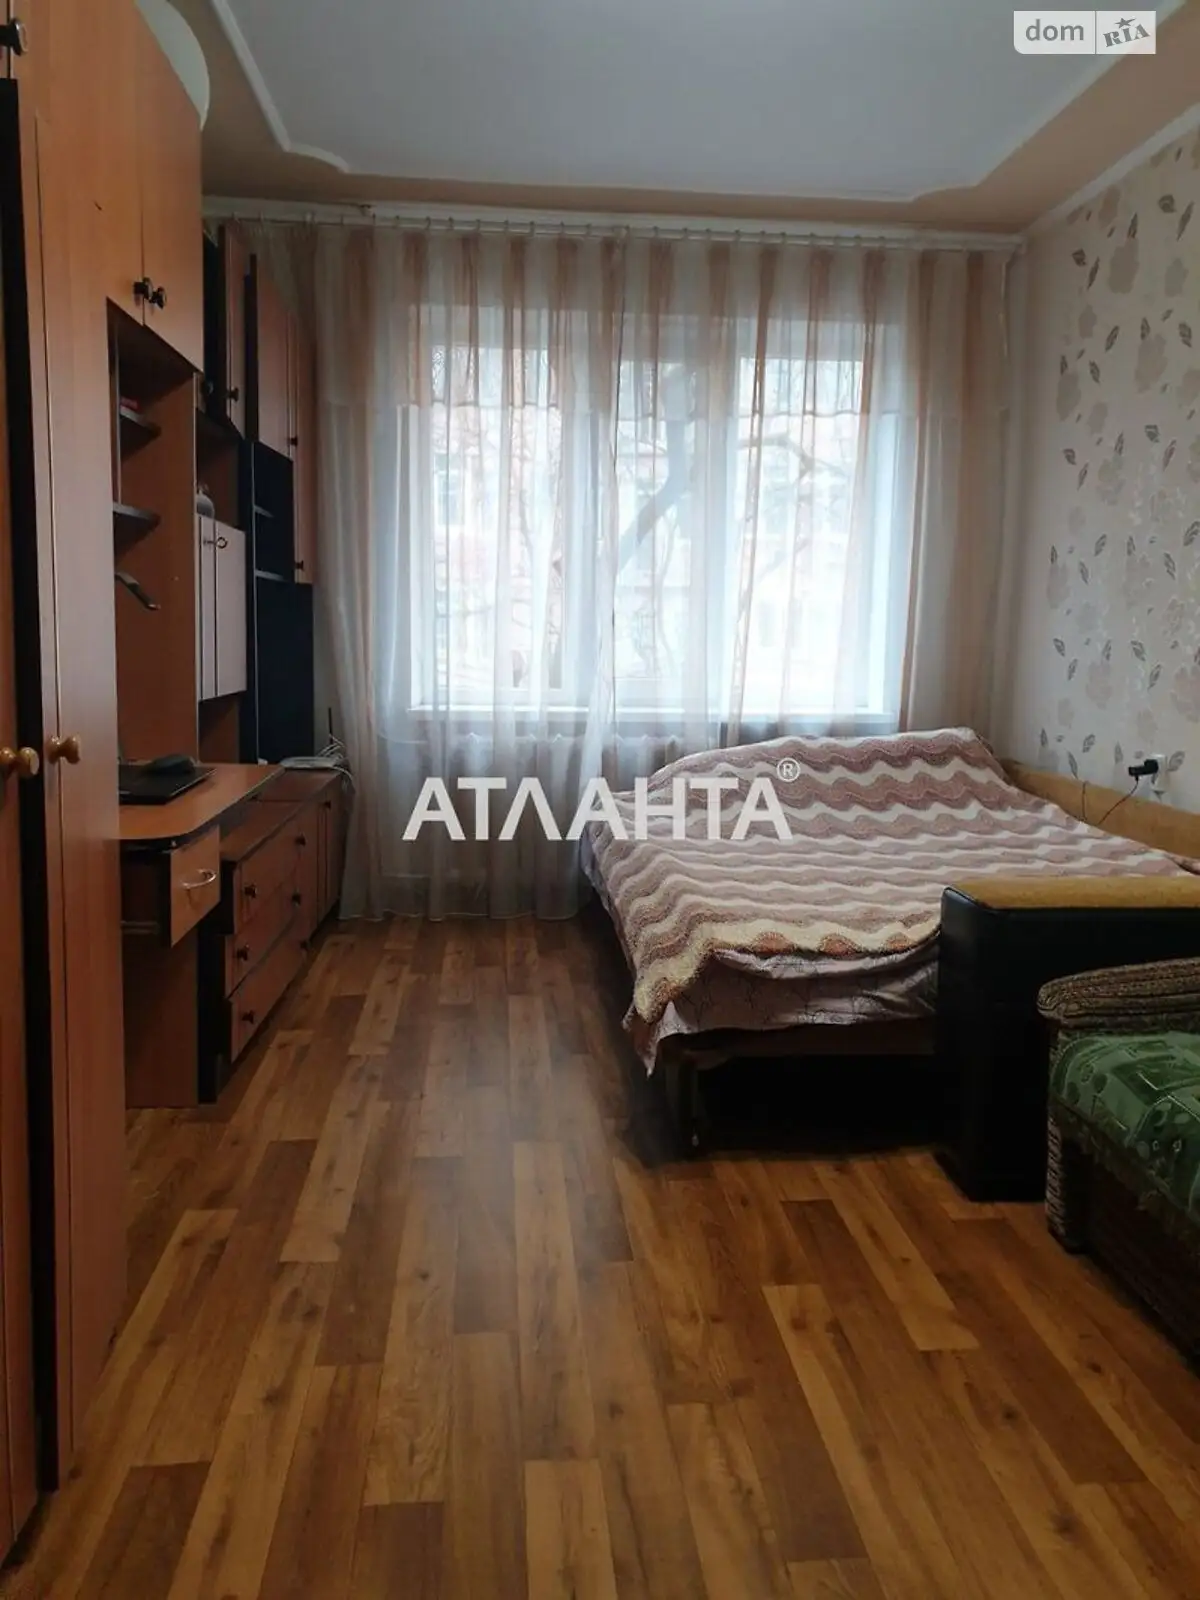 Продается комната 21.34 кв. м в Одессе - фото 2